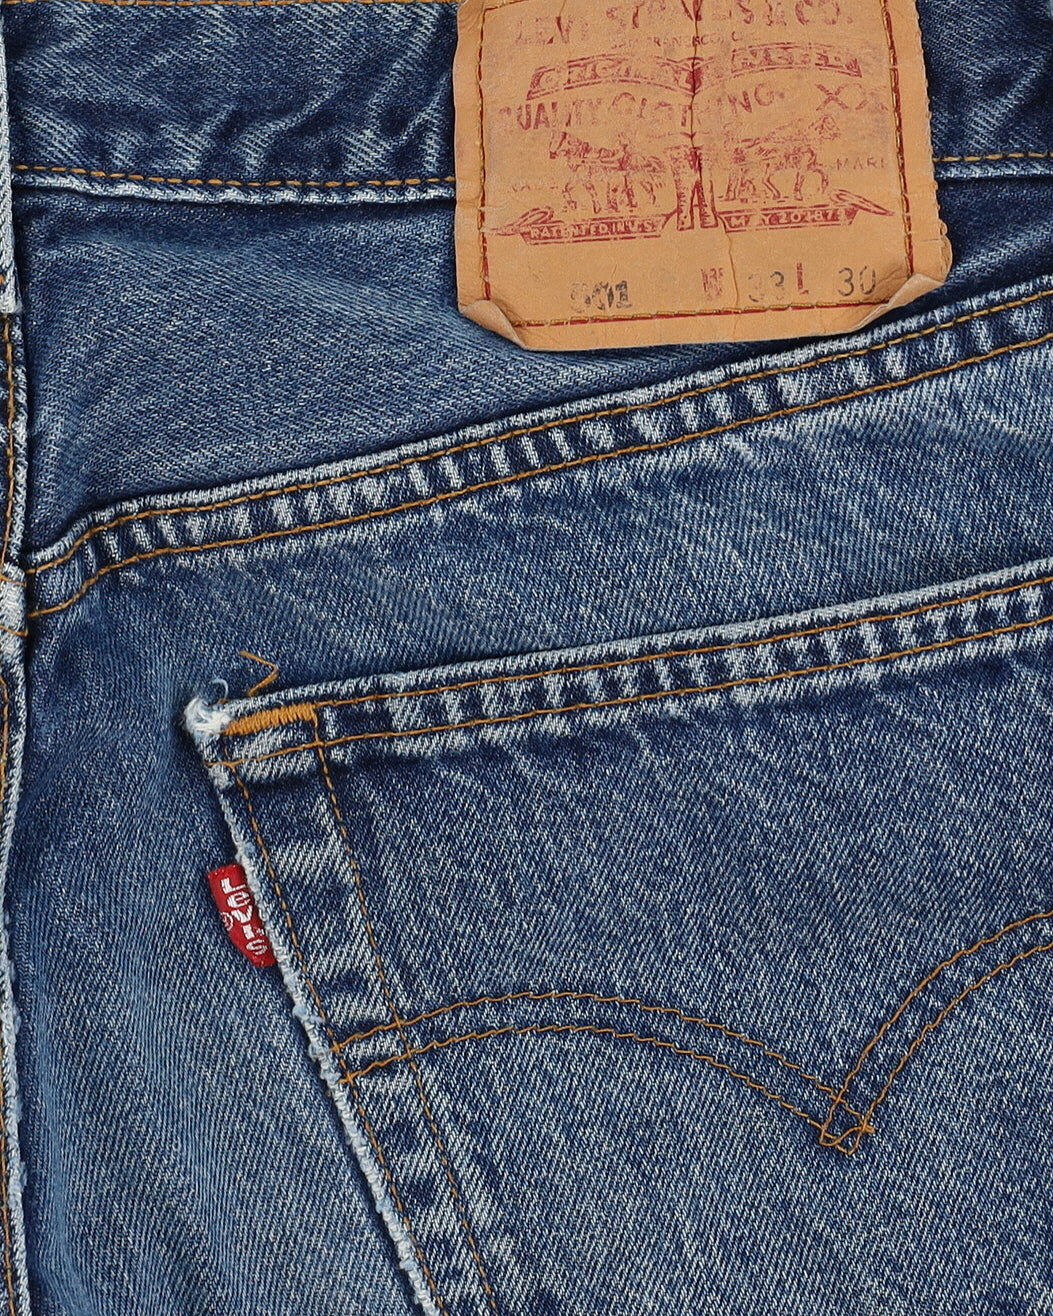 Vintage 90s Levi's 501 Blue Jeans - W32 L29